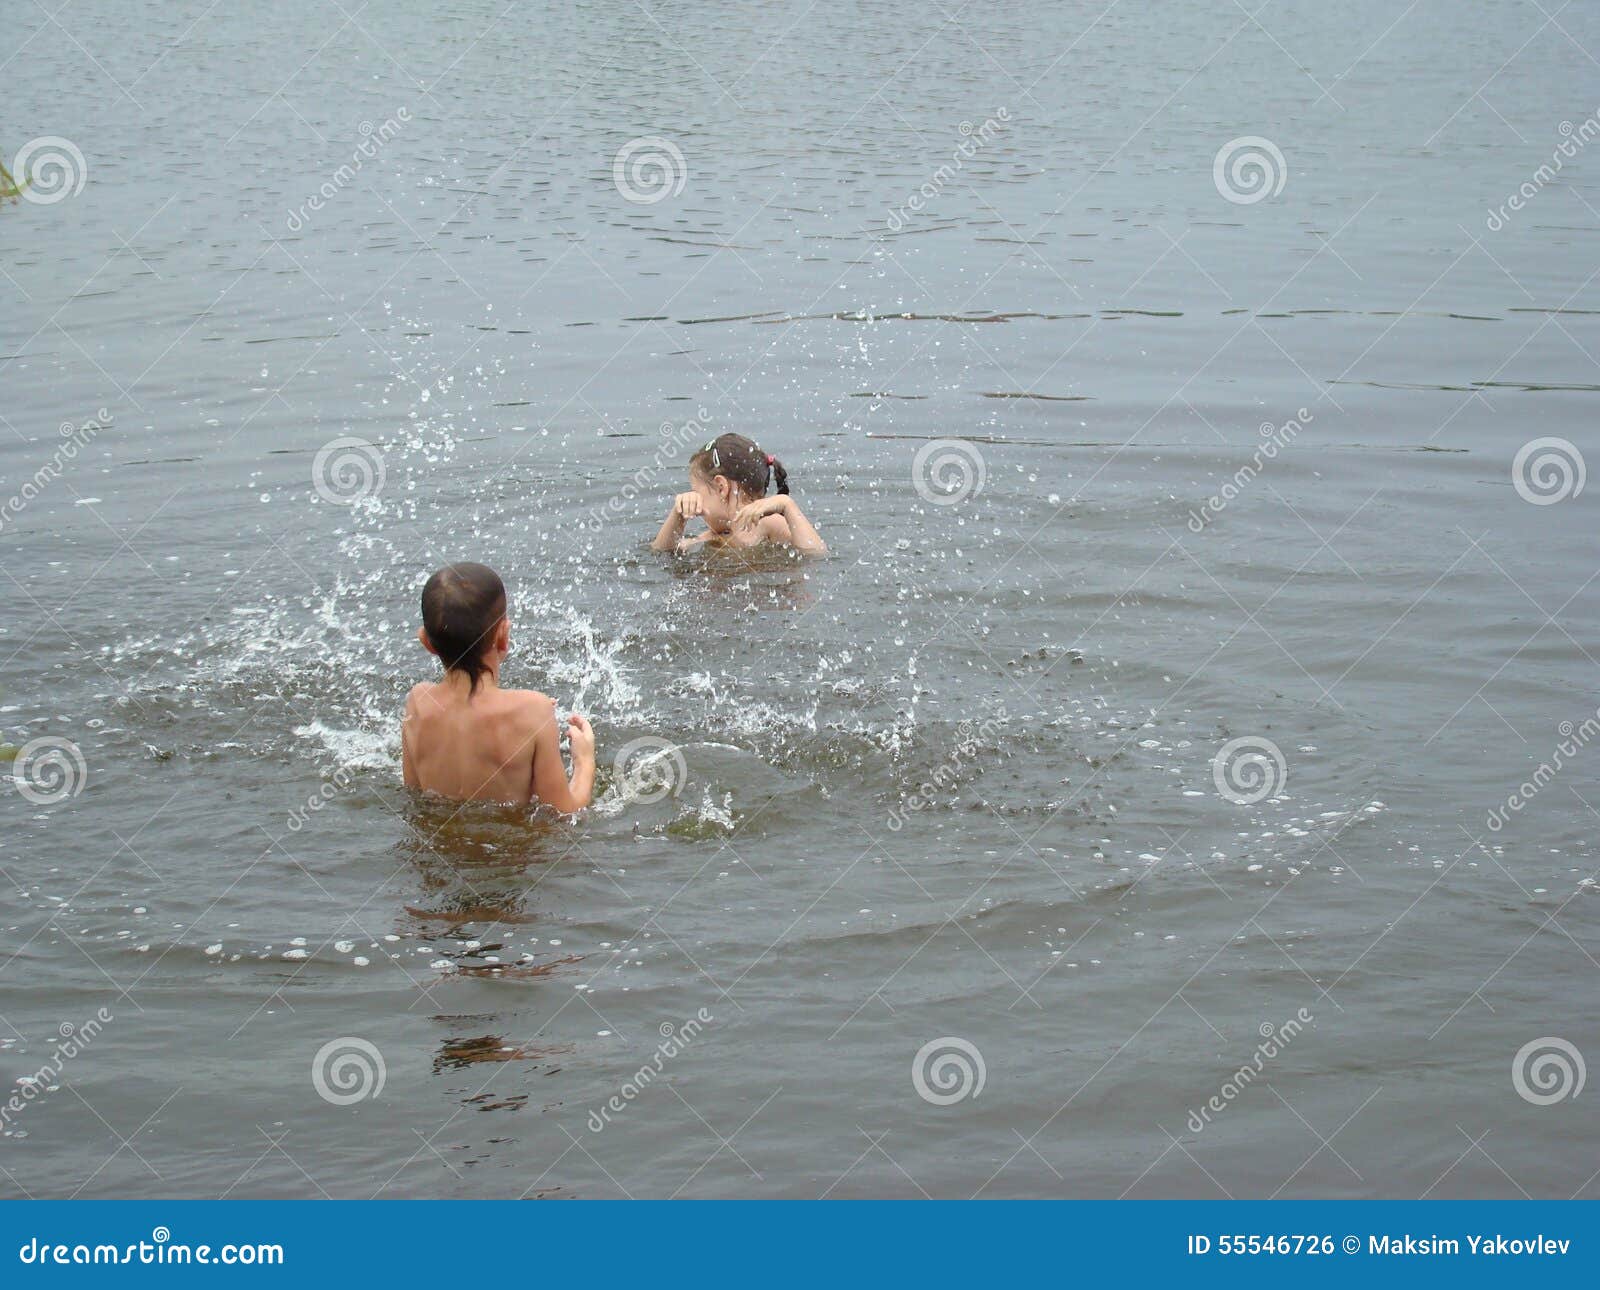 как купаться в бани голыми с детьми фото 88